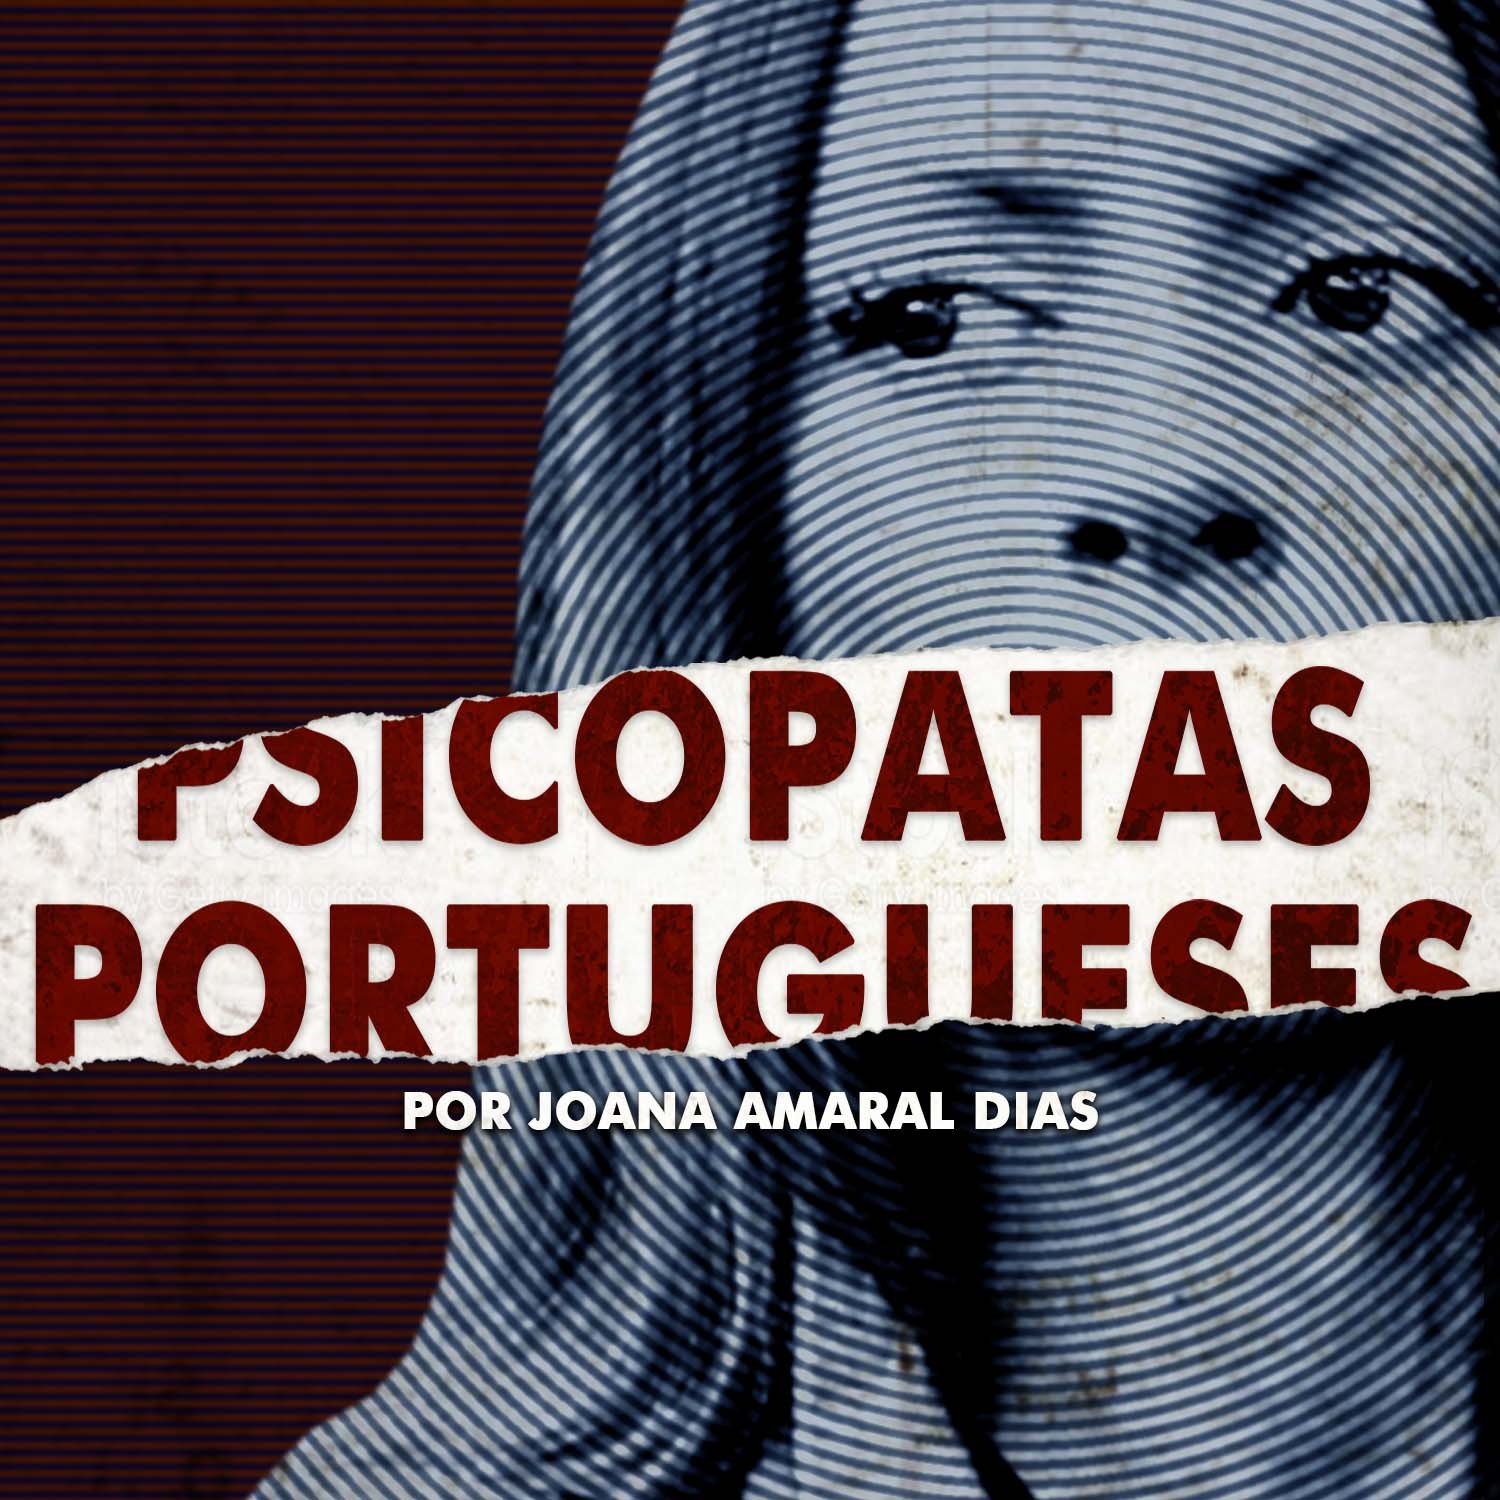 Podcast Bruá: Psicopatas Portugueses